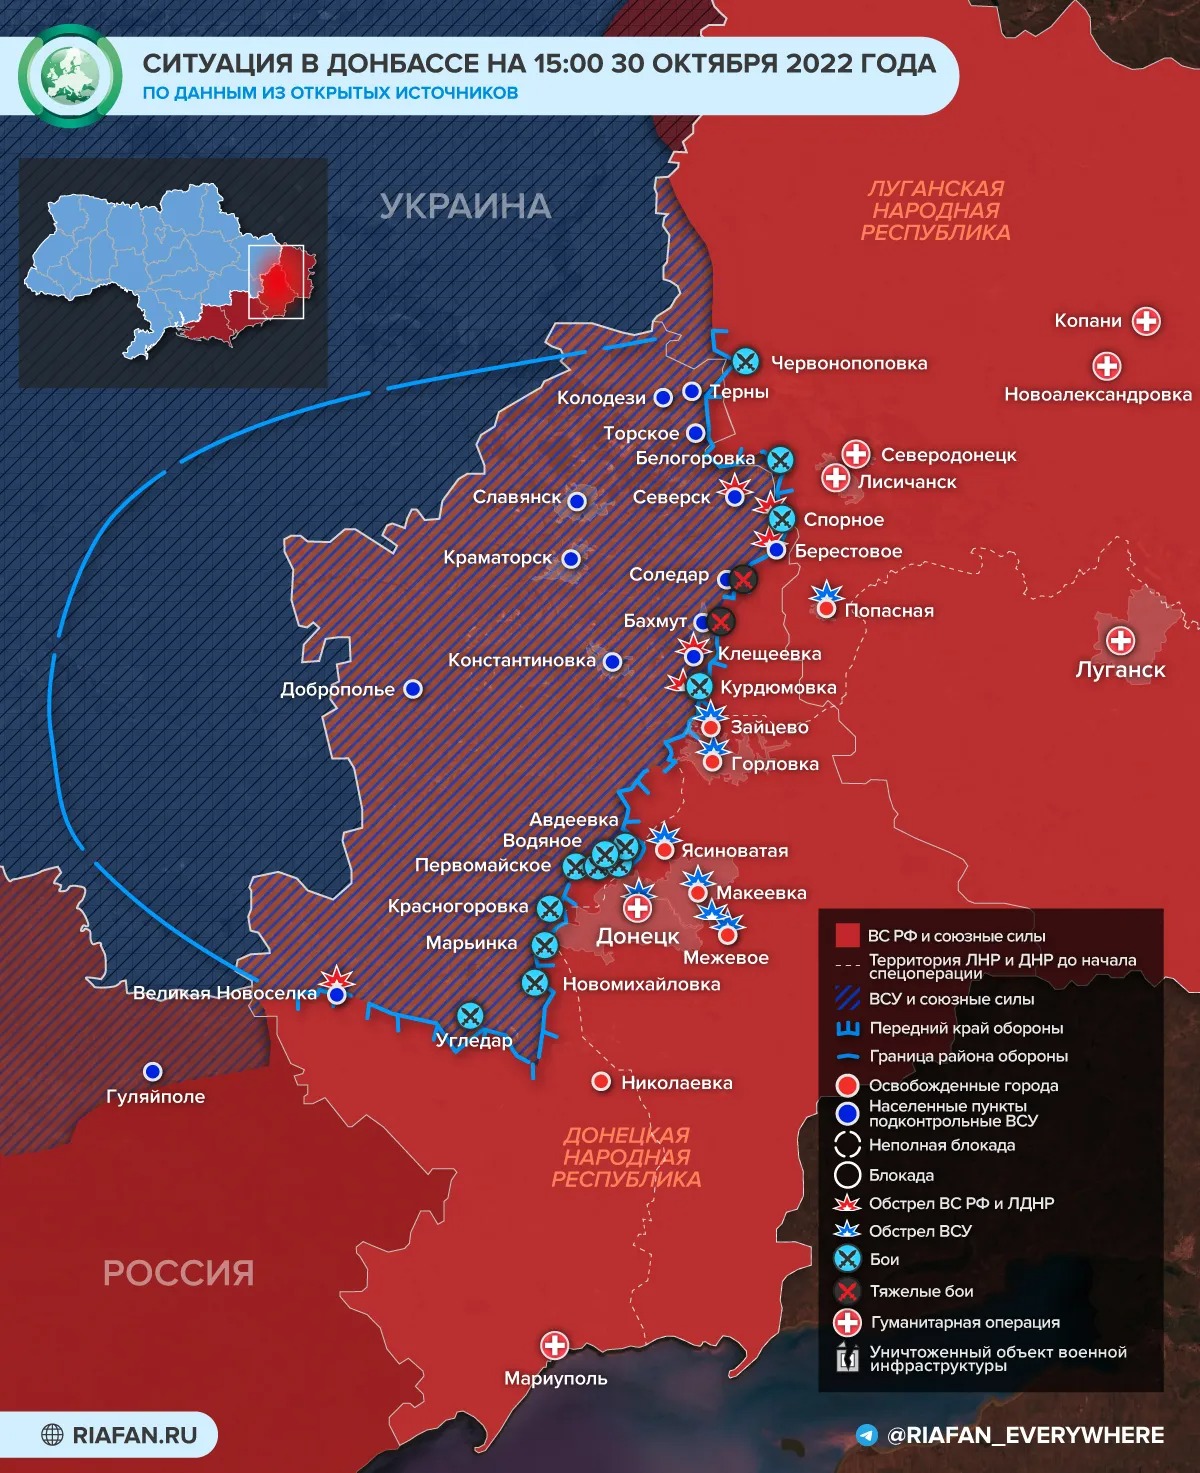 Кадыров объявил охоту в зоне СВО: последние новости военной спецоперации на Украине на сегодня 31 октября 2022 года